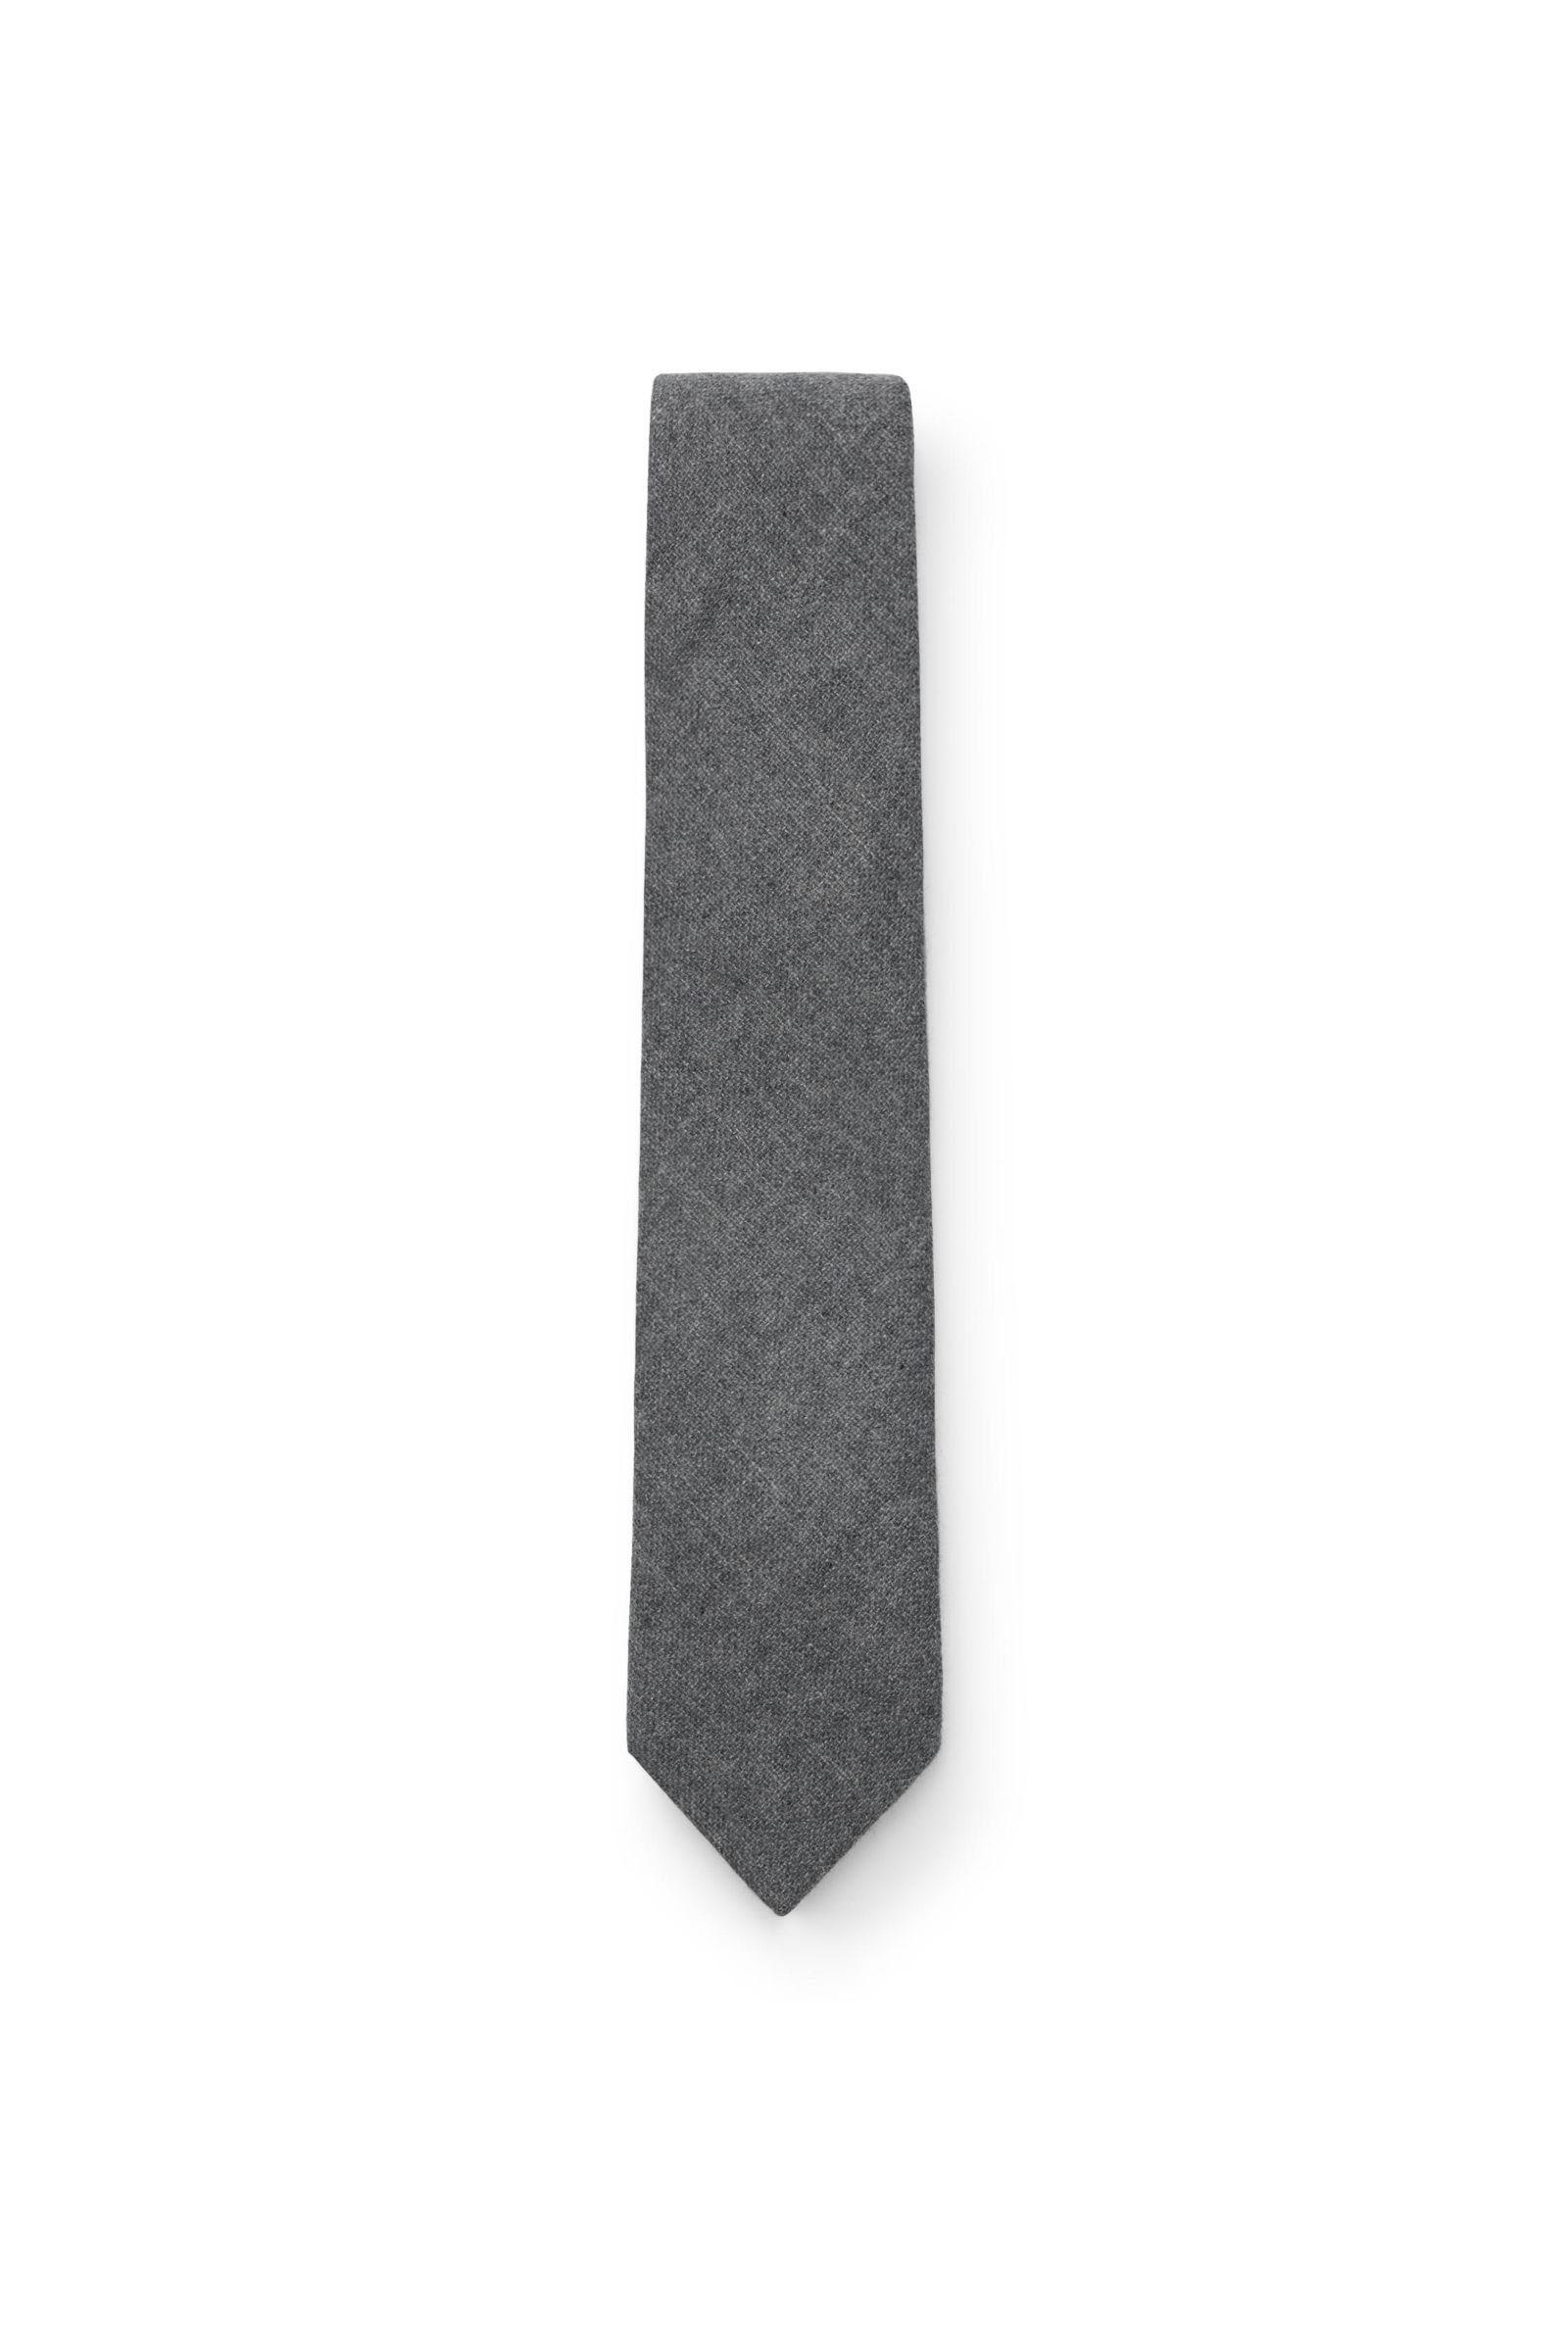 Cashmere Krawatte grau